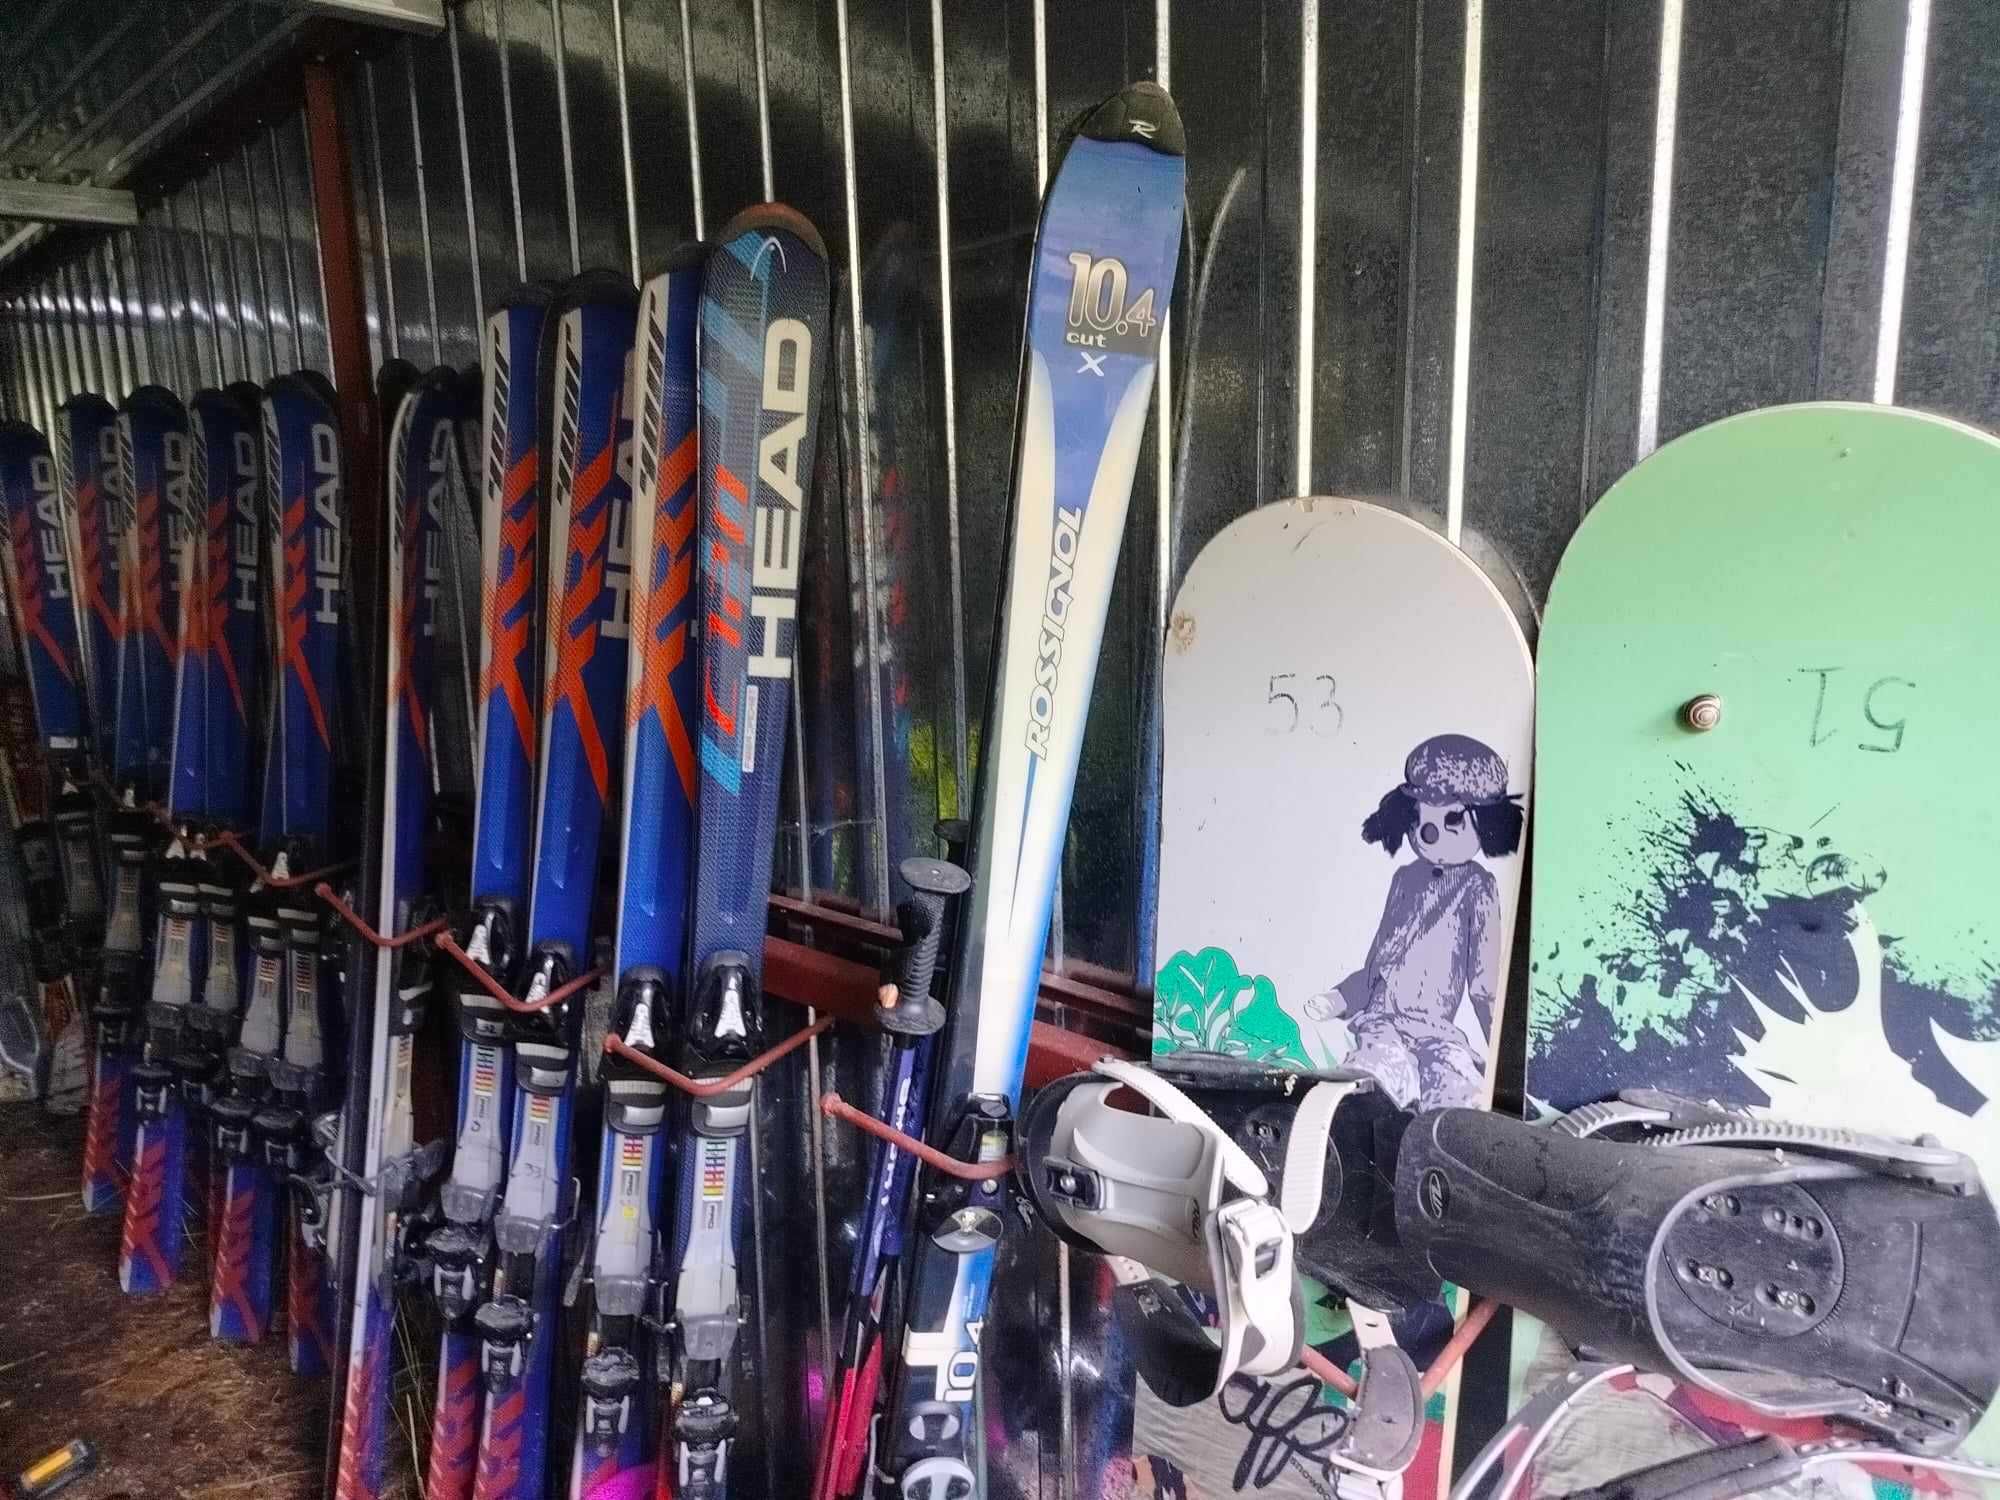 narty zjazdowe, biegowe, snowboardy